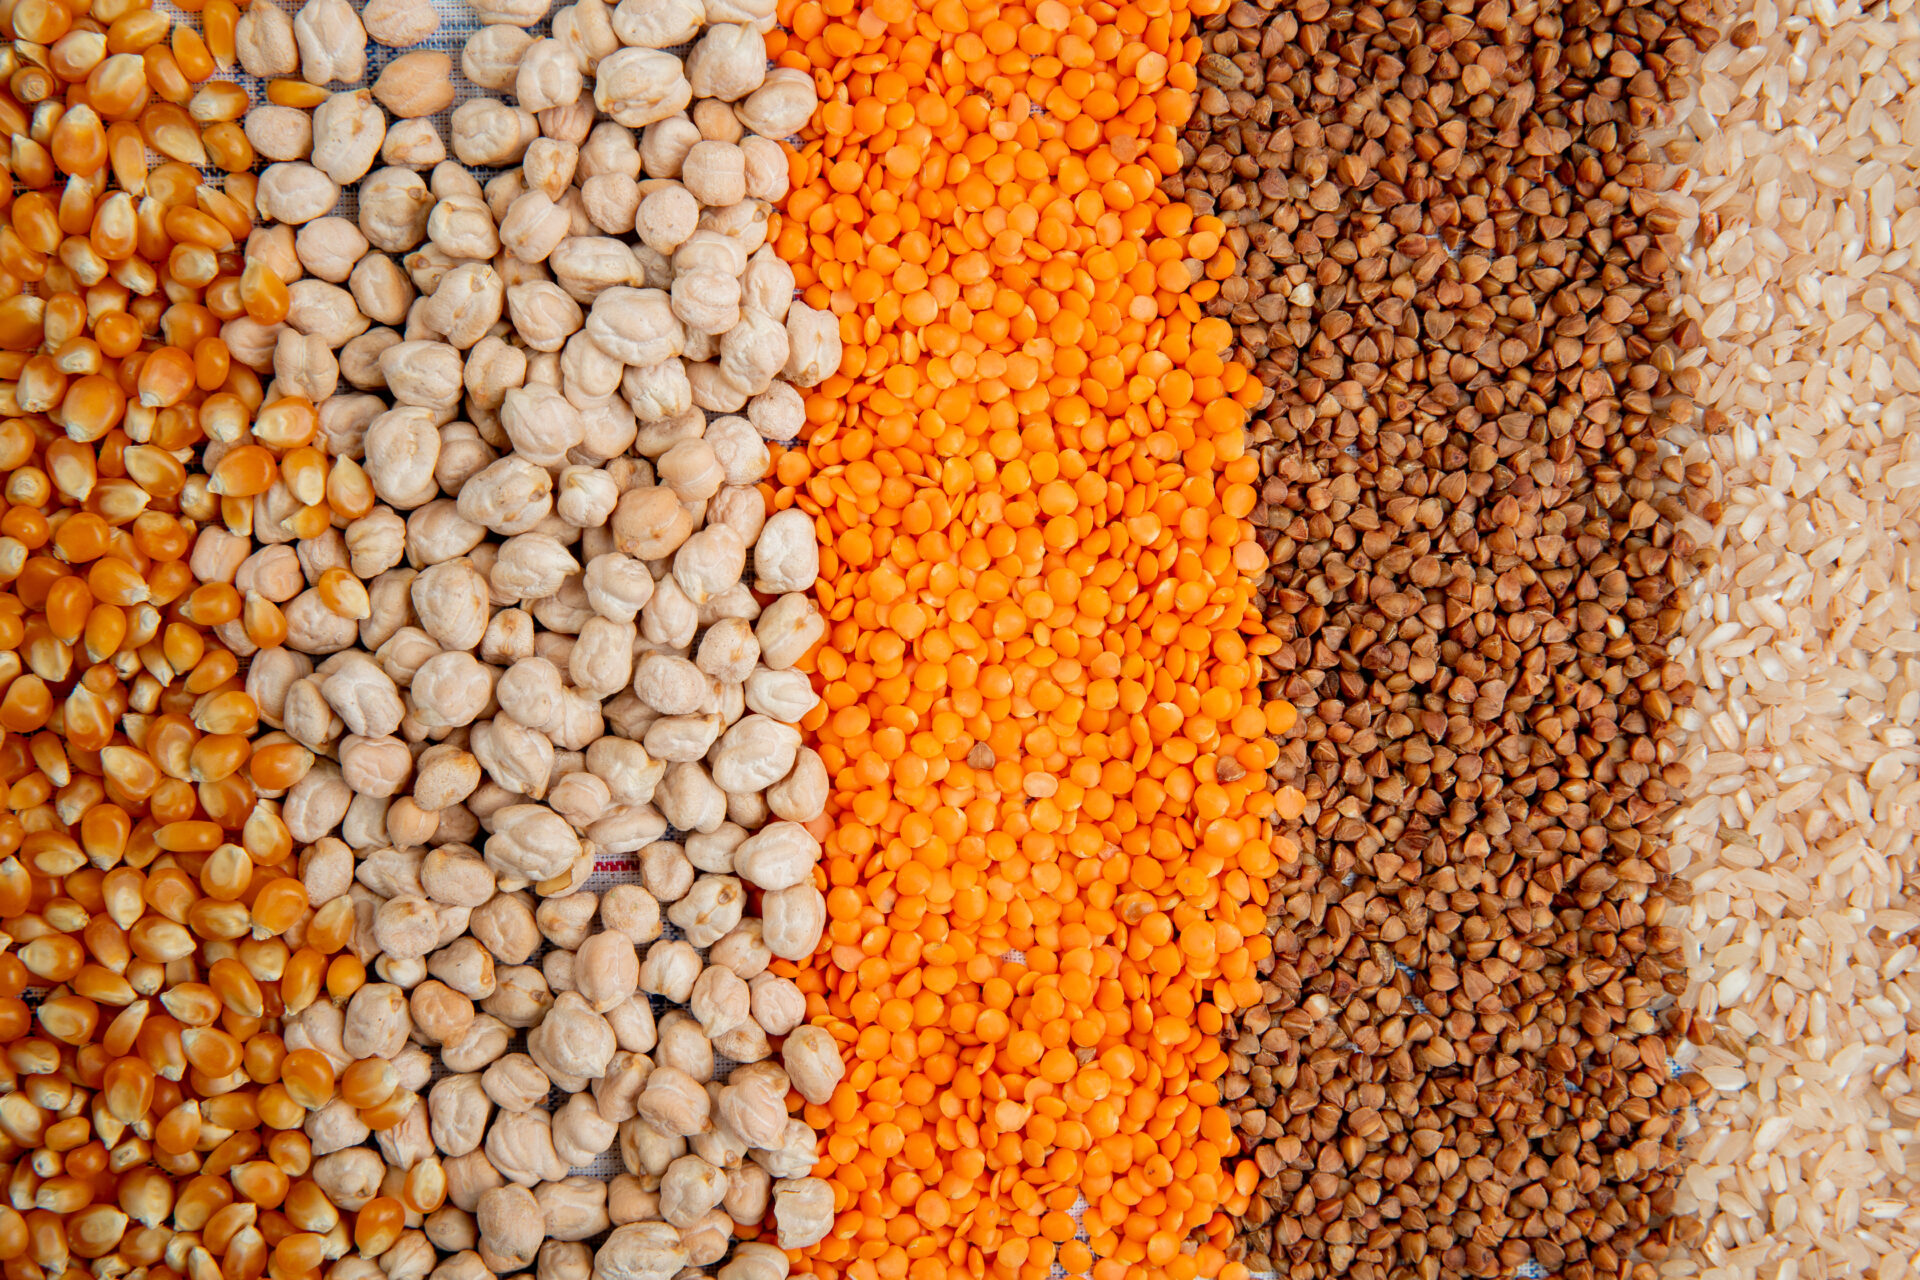 Fundo de diferentes tipos de cereais sementes de milho grão de bico lentilhas vermelhas trigo e arroz vista superior.